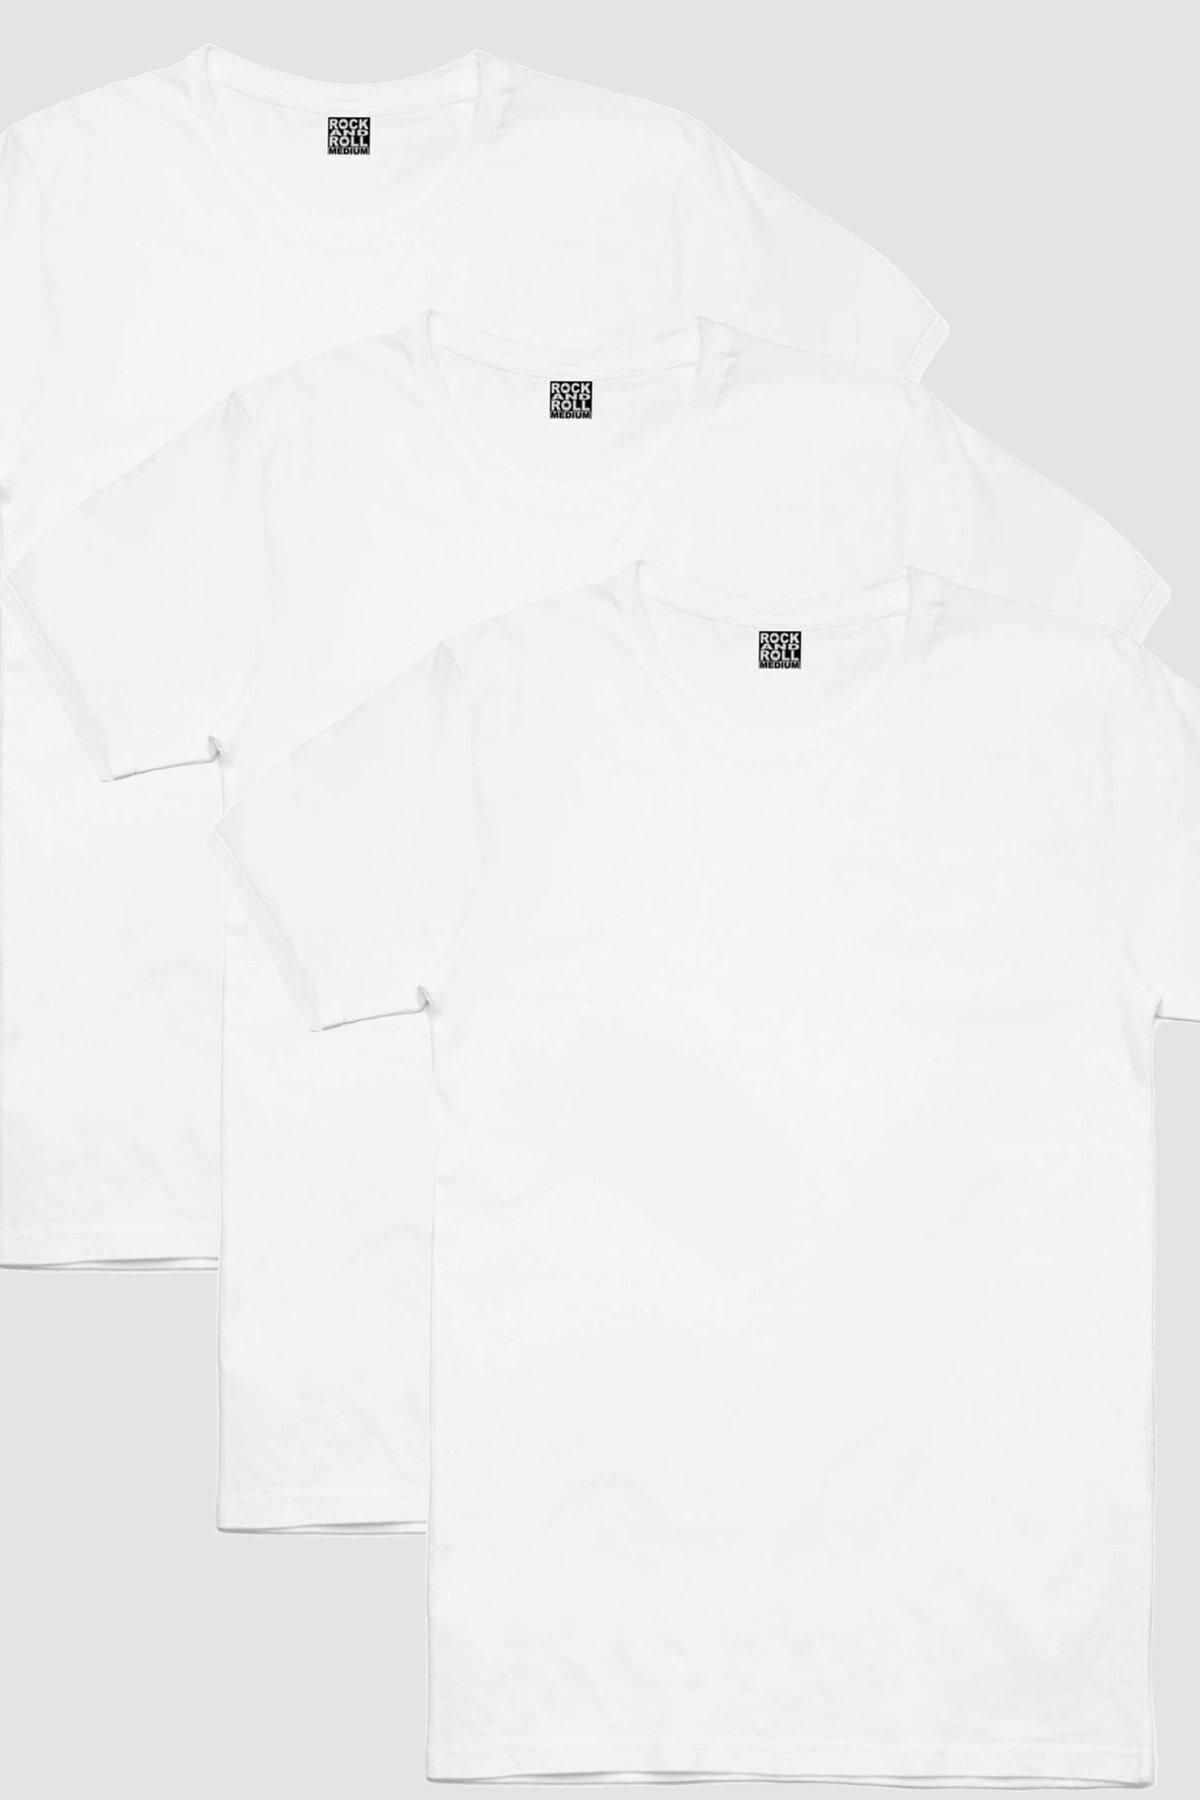 Düz, Baskısız Beyaz Erkek 3'lü Eko Paket Tshirt